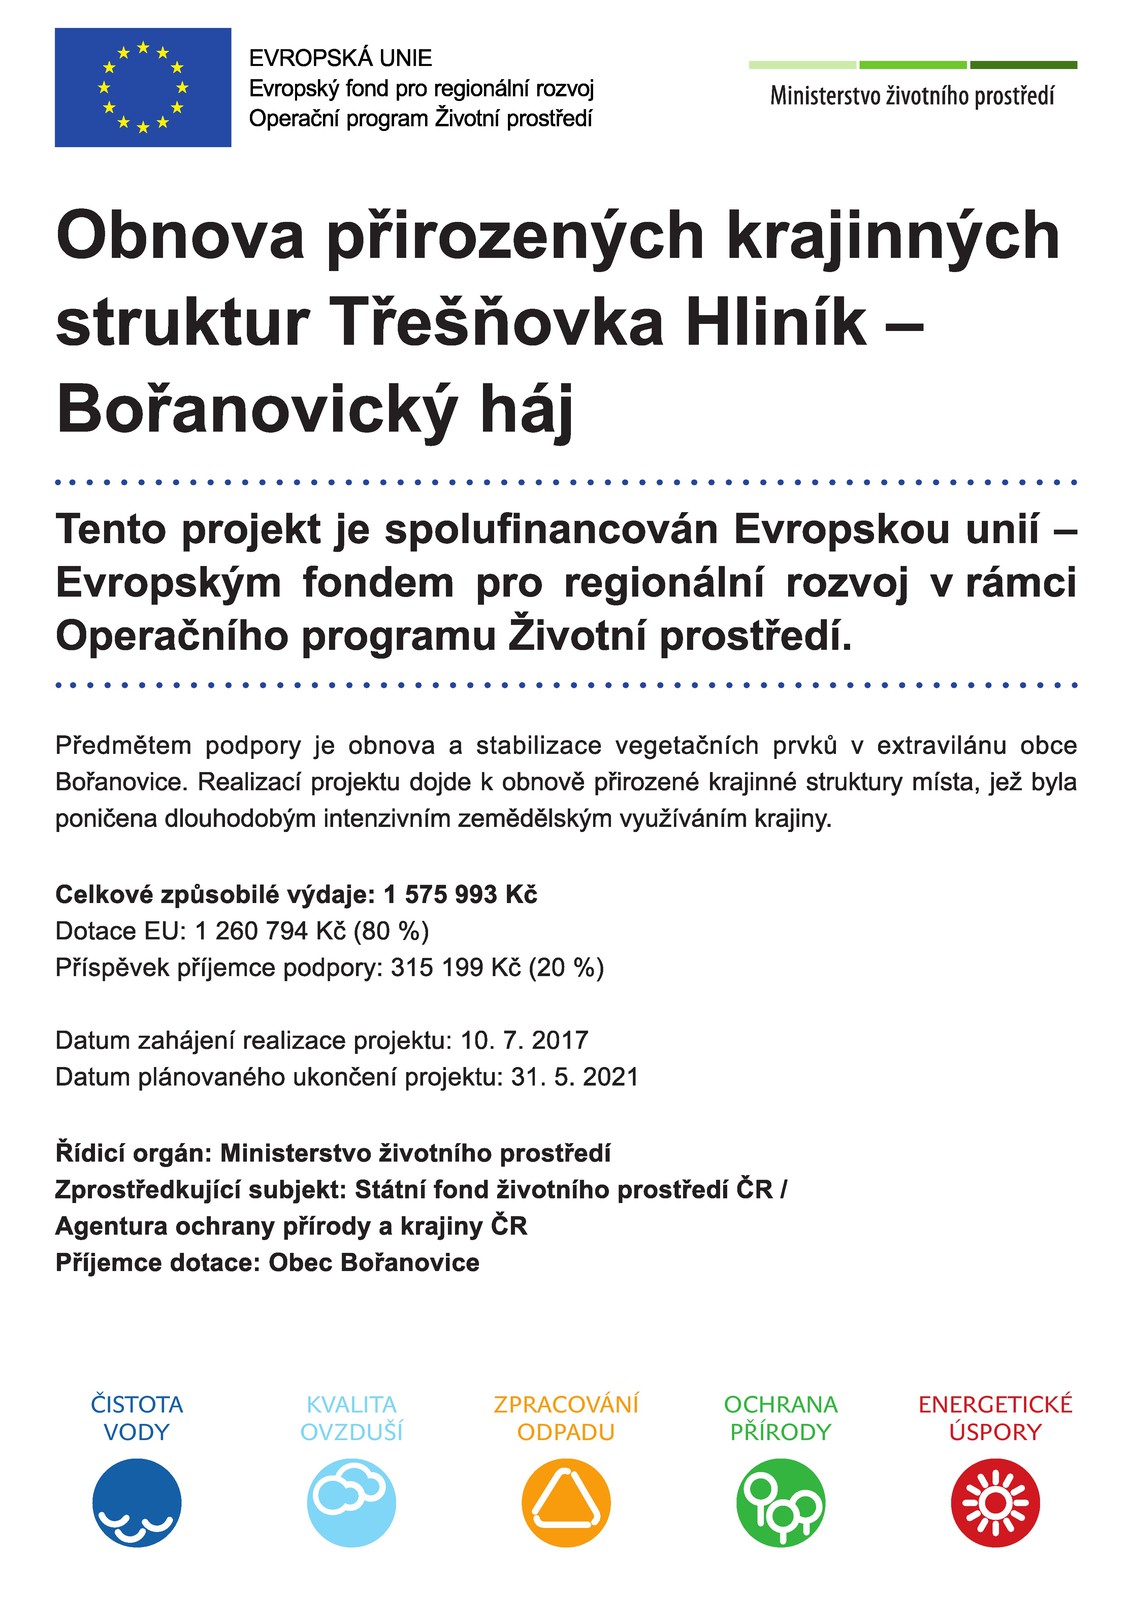 Obnova přirozených krajinných struktur Třešňovka Hliník - Bořanovický háj_propagace.jpg